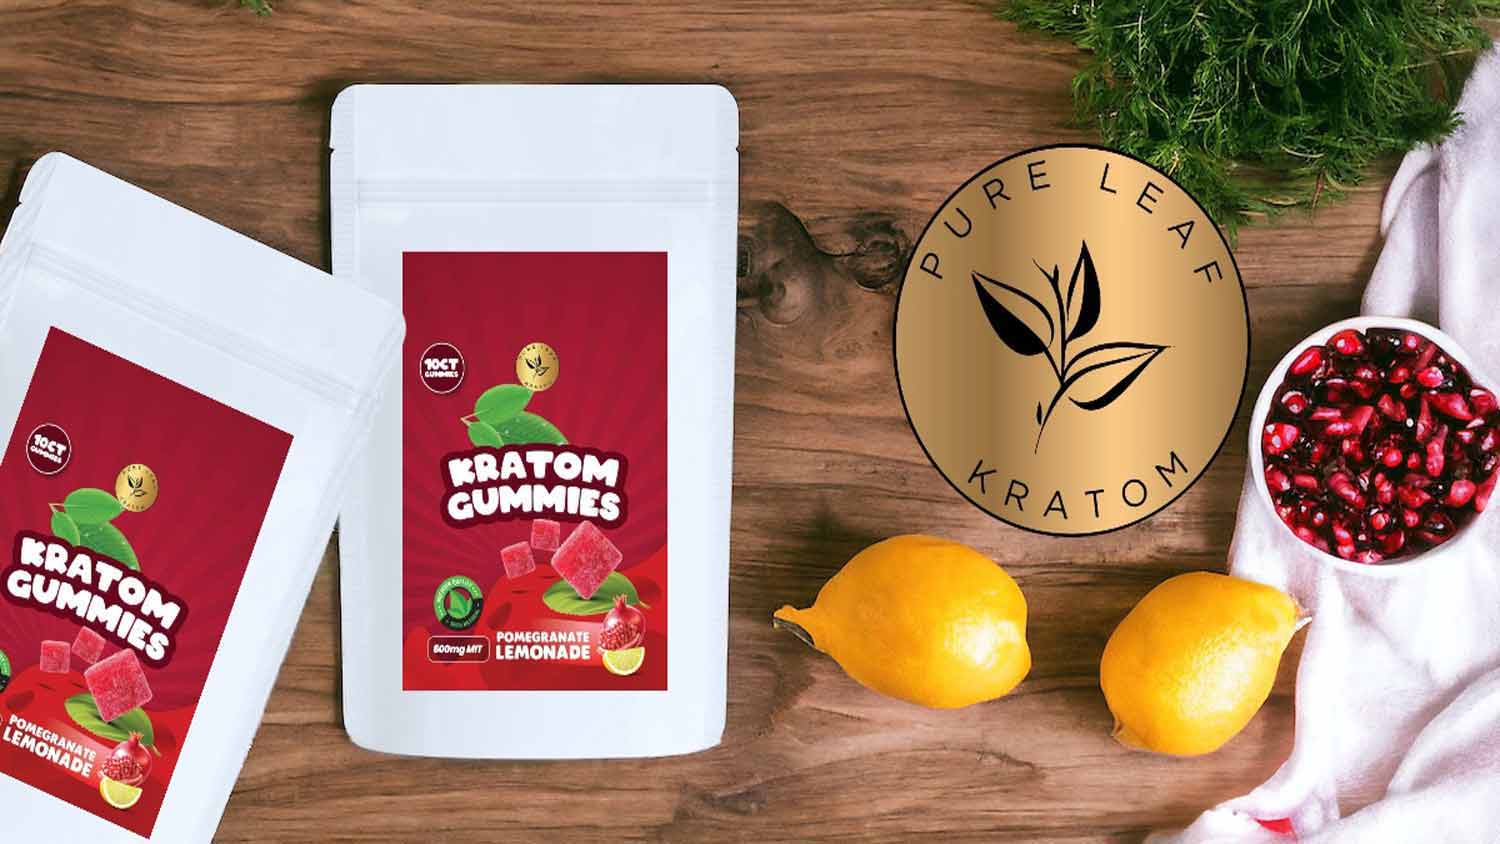 Pure Leaf Kratom Gummies Pomegranate Lemonade